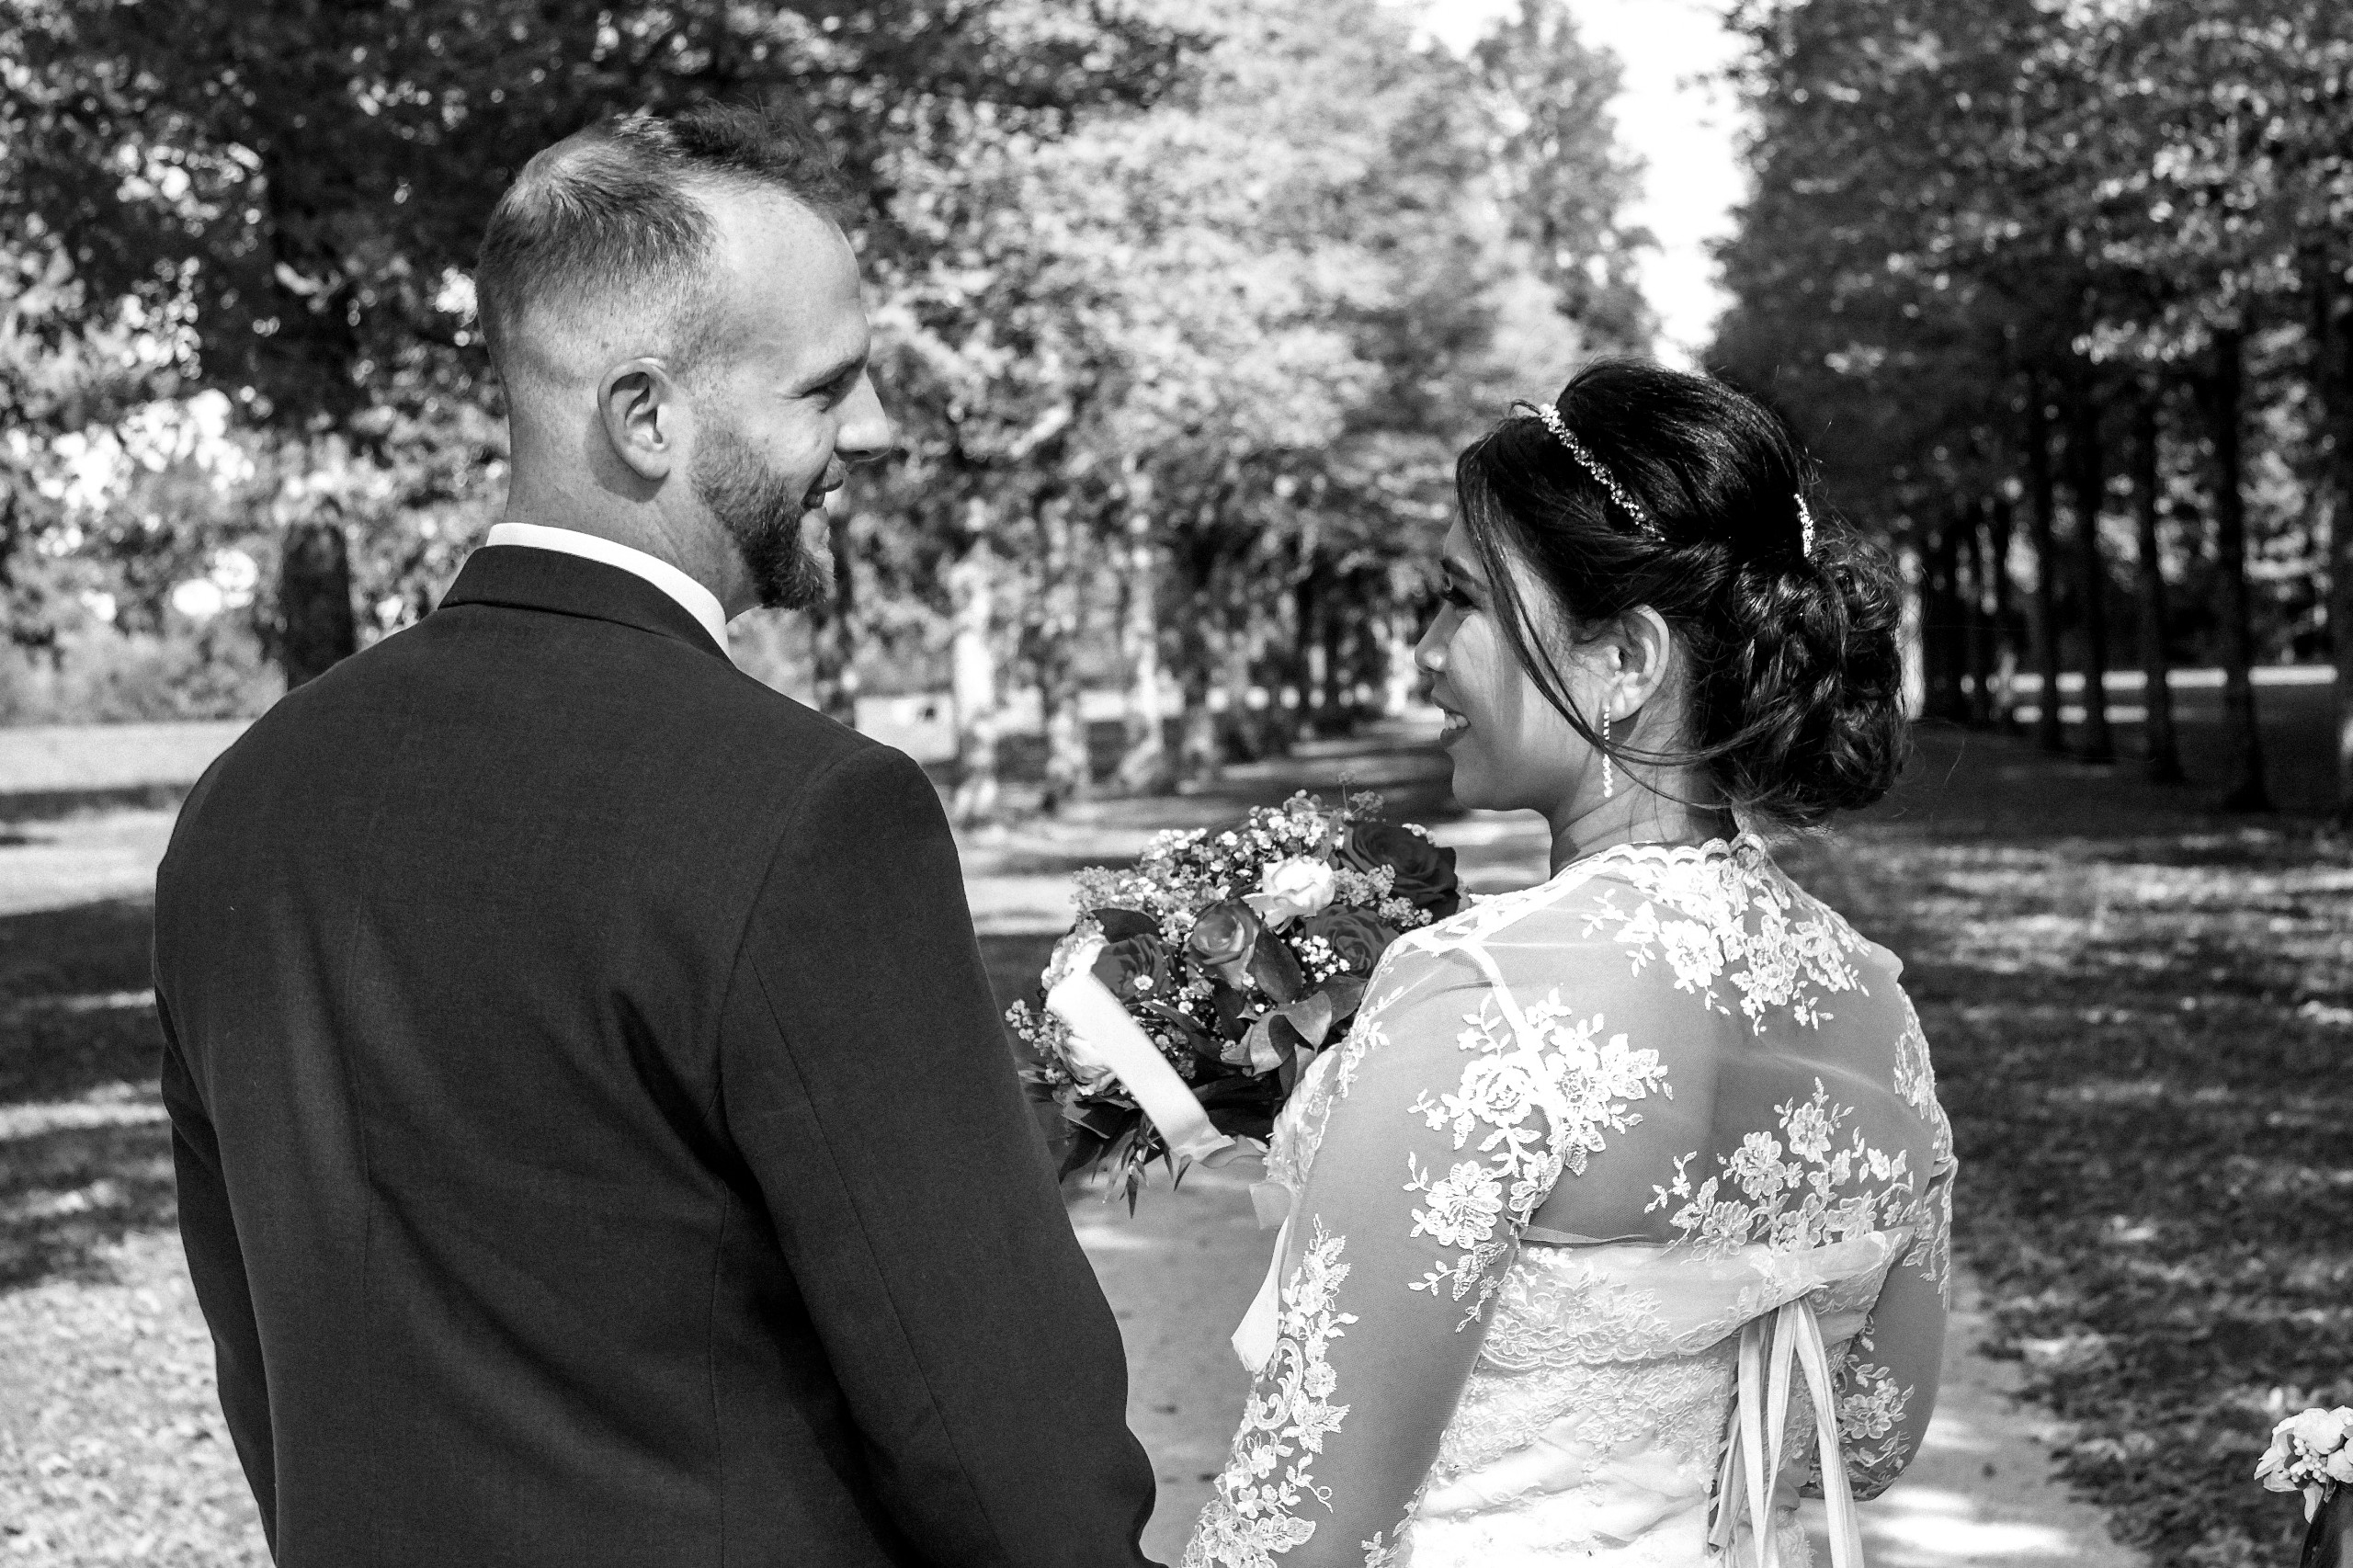 Hochzeitsfotograf im Gro&szlig;raum Baden-Baden. Ich schaffe als Fotograf Ihrer Hochzeit emotionale, preiswerte Fotografie, bereits ab 280 &euro;